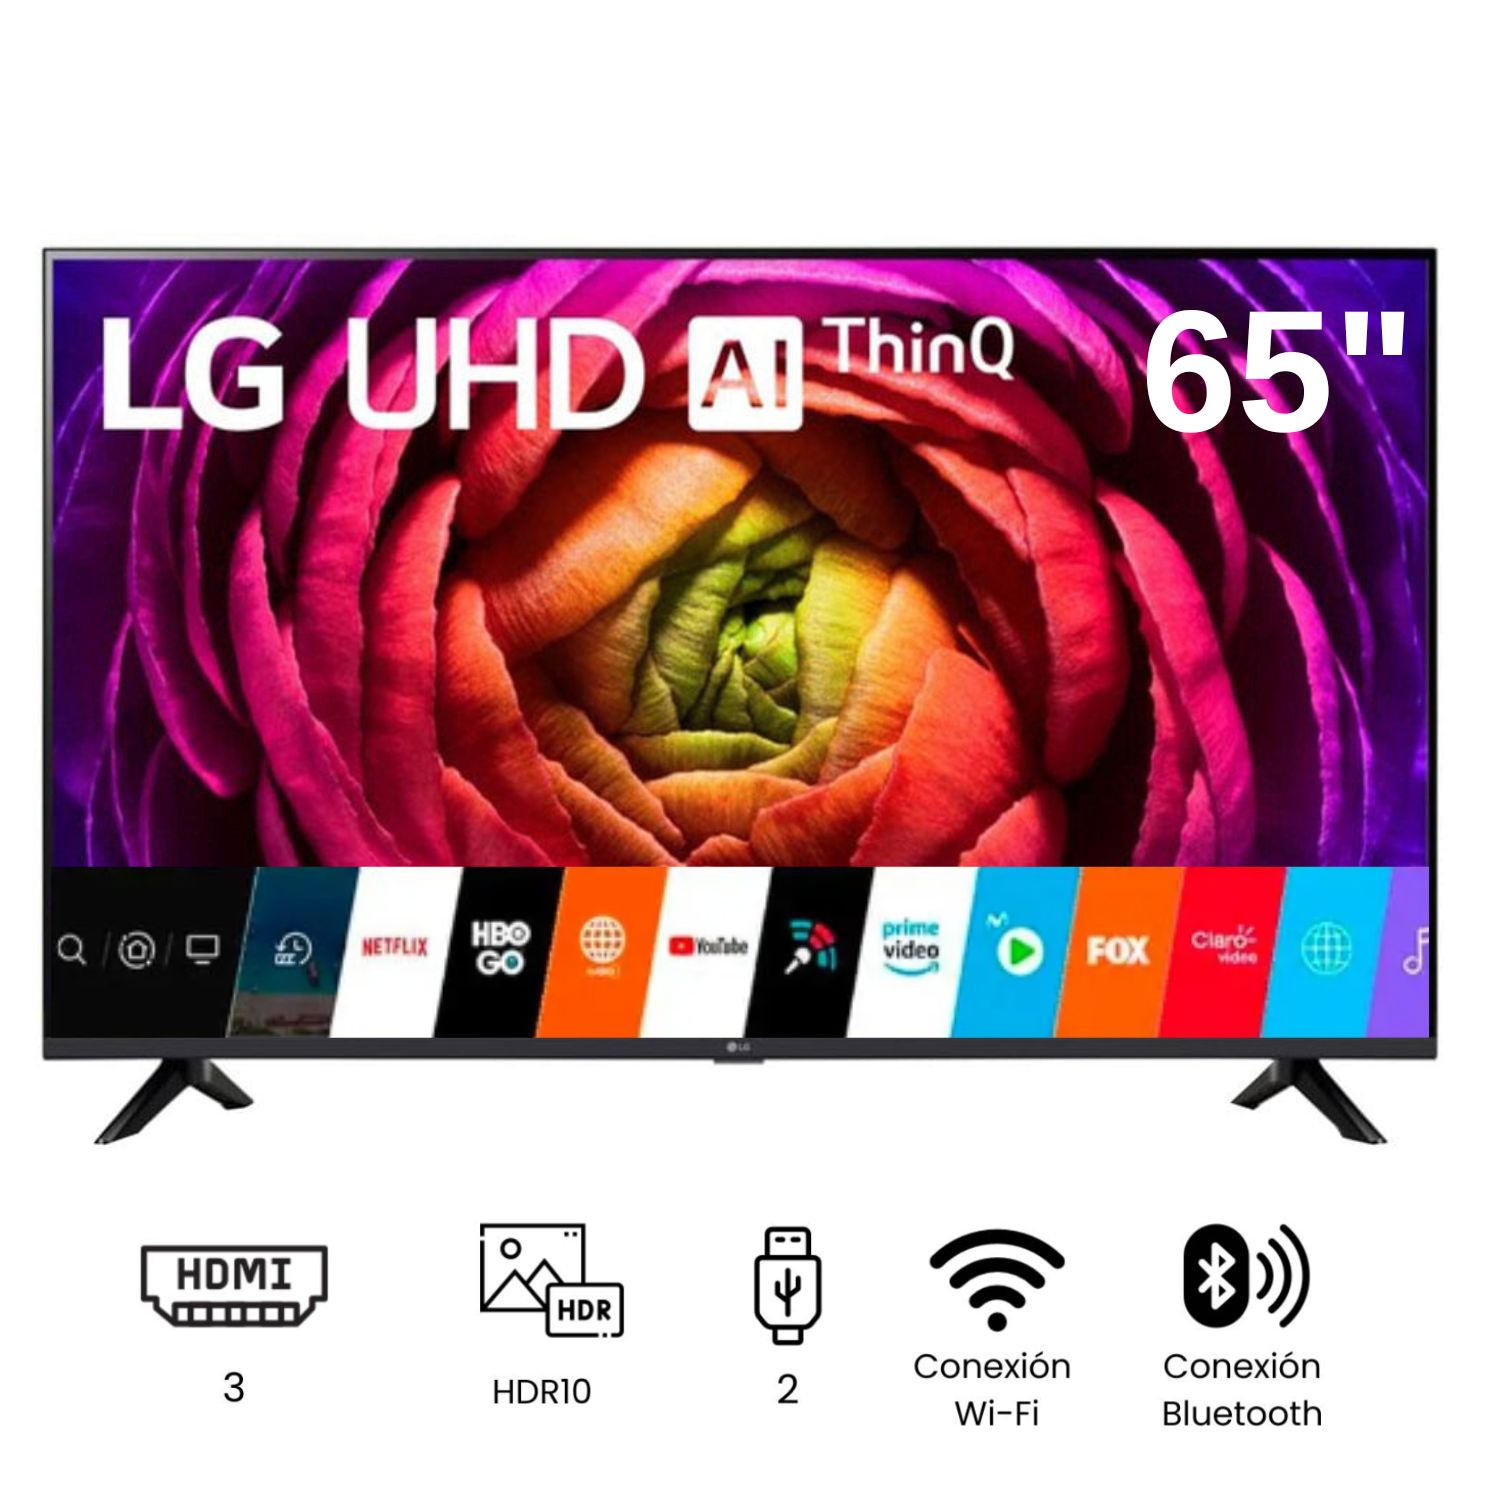 Televisor LG LED  Smart TV 65'' UHD 4K ThinQ AI 65UR7300